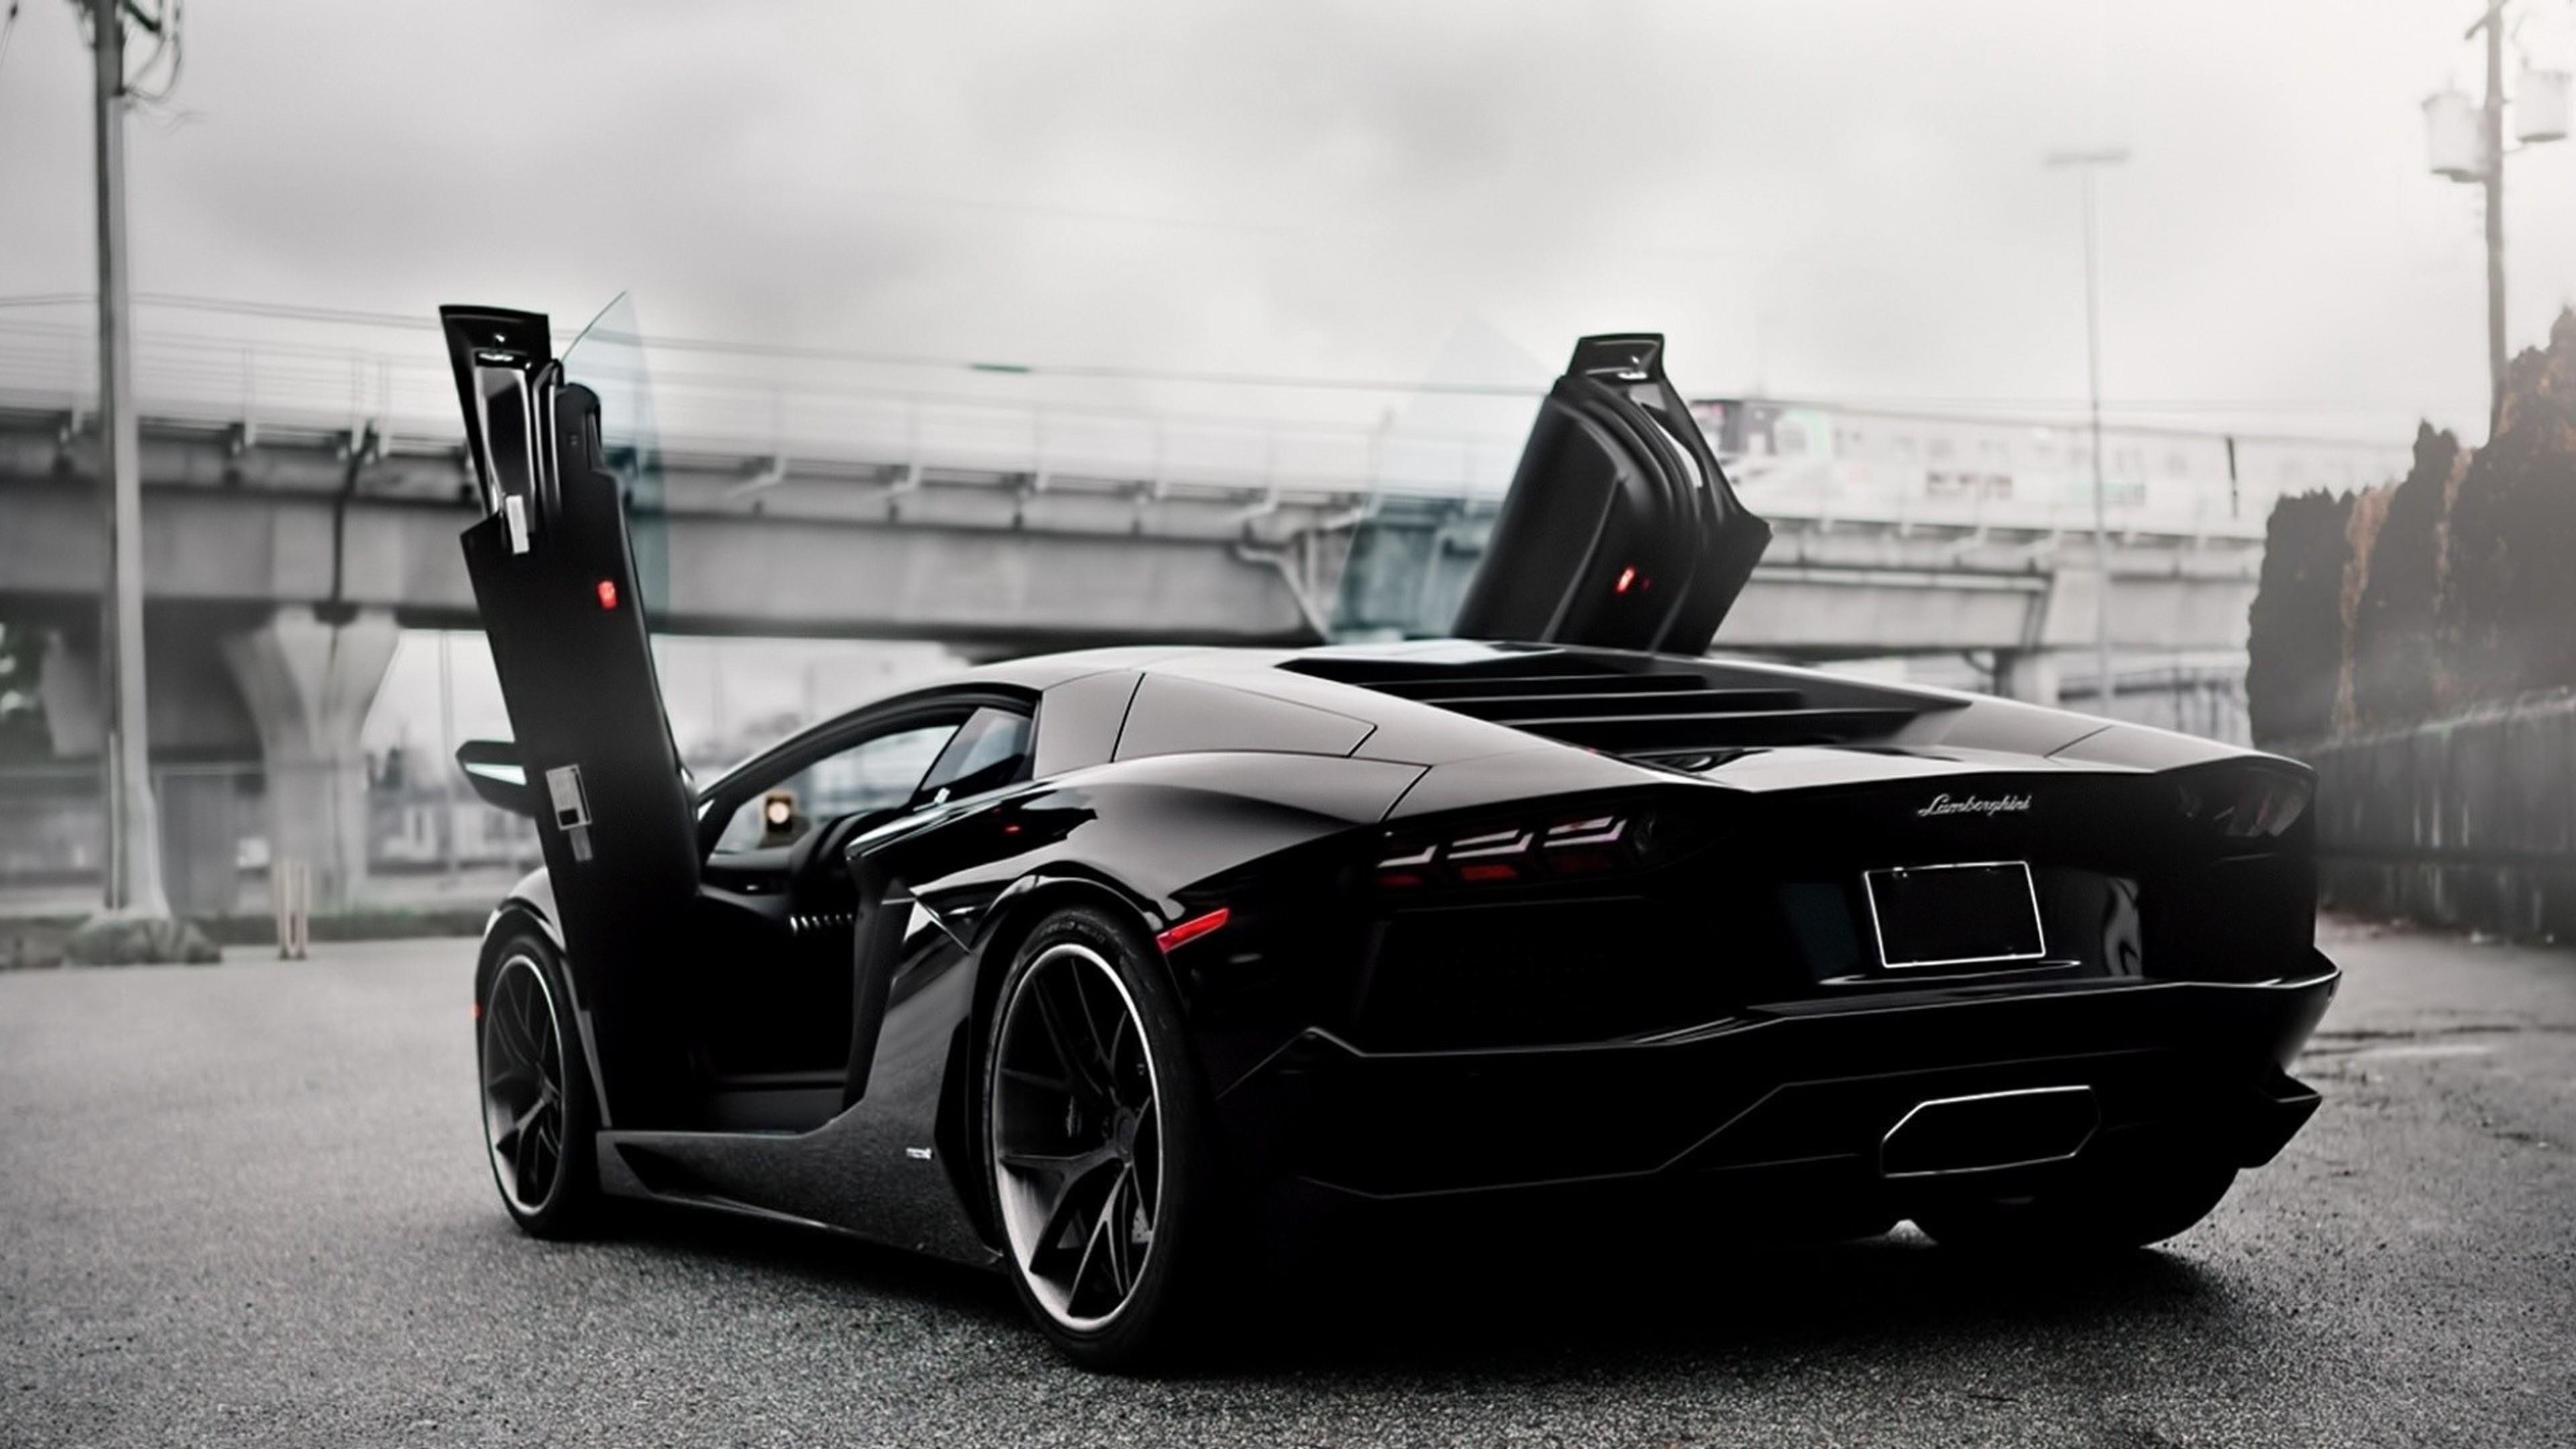 免费照片下载Lamborghini Aventador, Lamborghini, 照片来自fonwall汽车网站